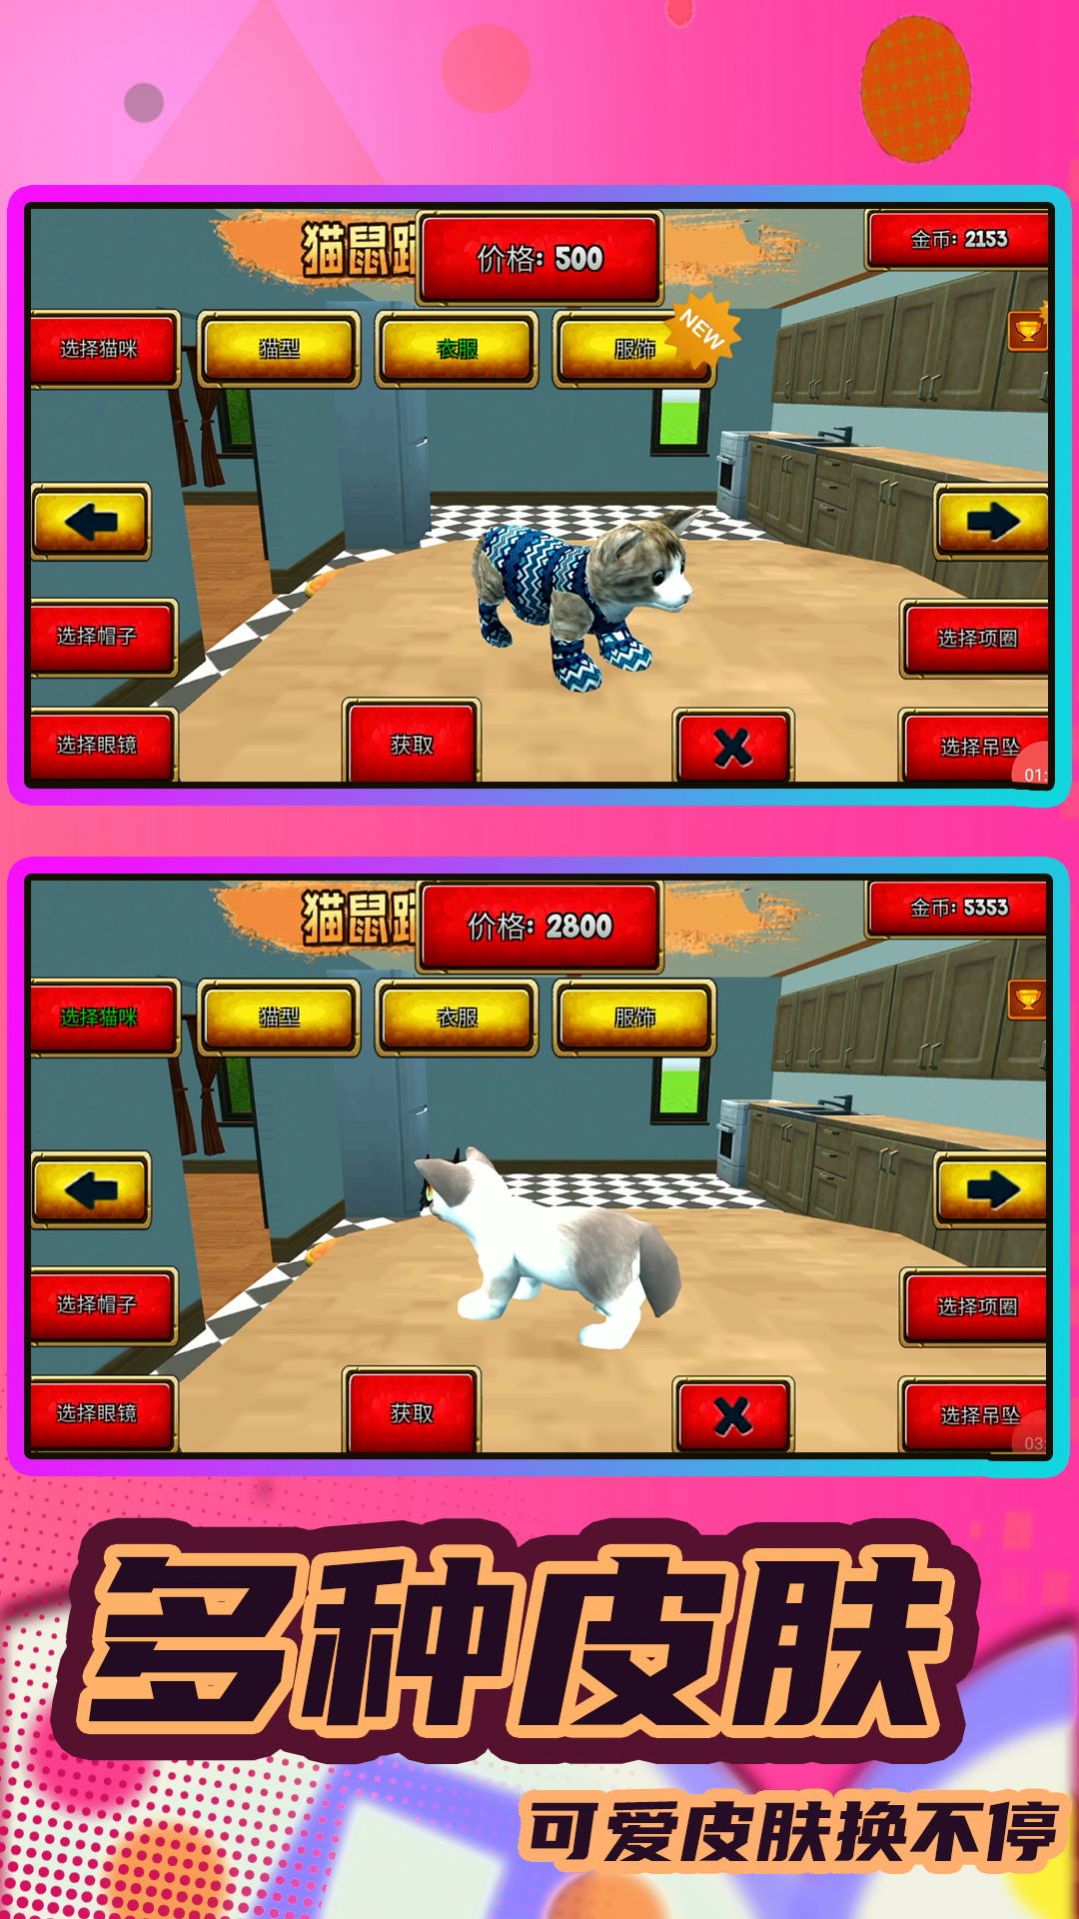 猫鼠跑酷之家游戏安卓版图片1